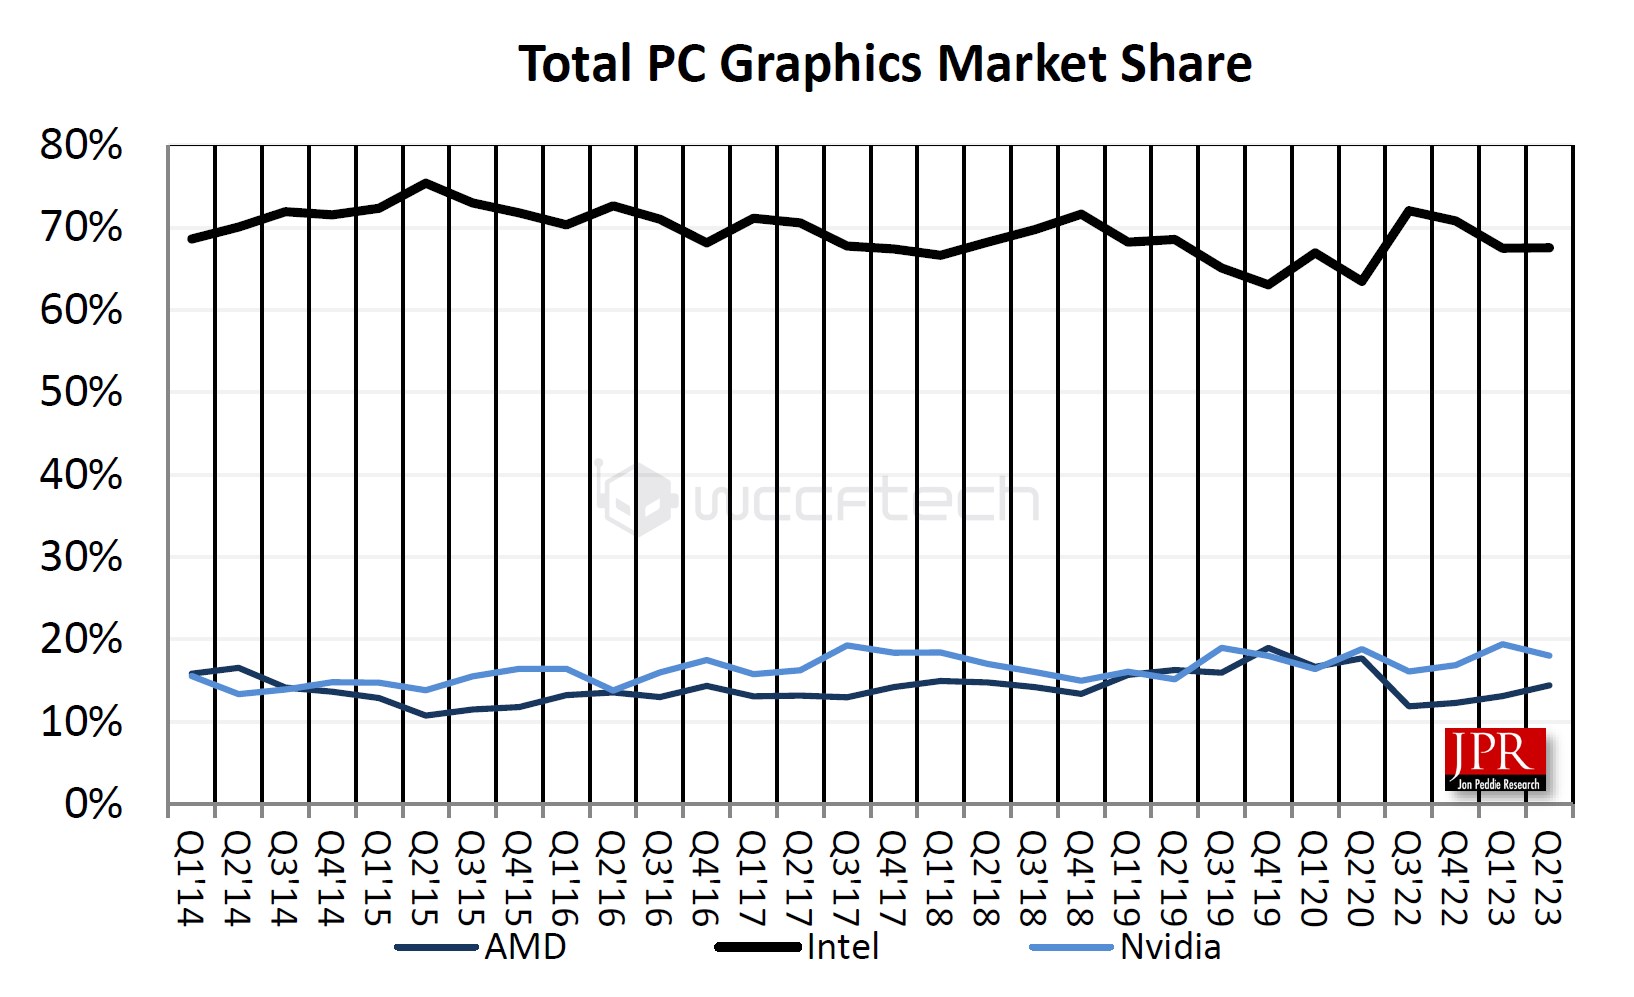 Cuota de mercado de proveedores de GPU a lo largo del tiempo (a través de JPR)